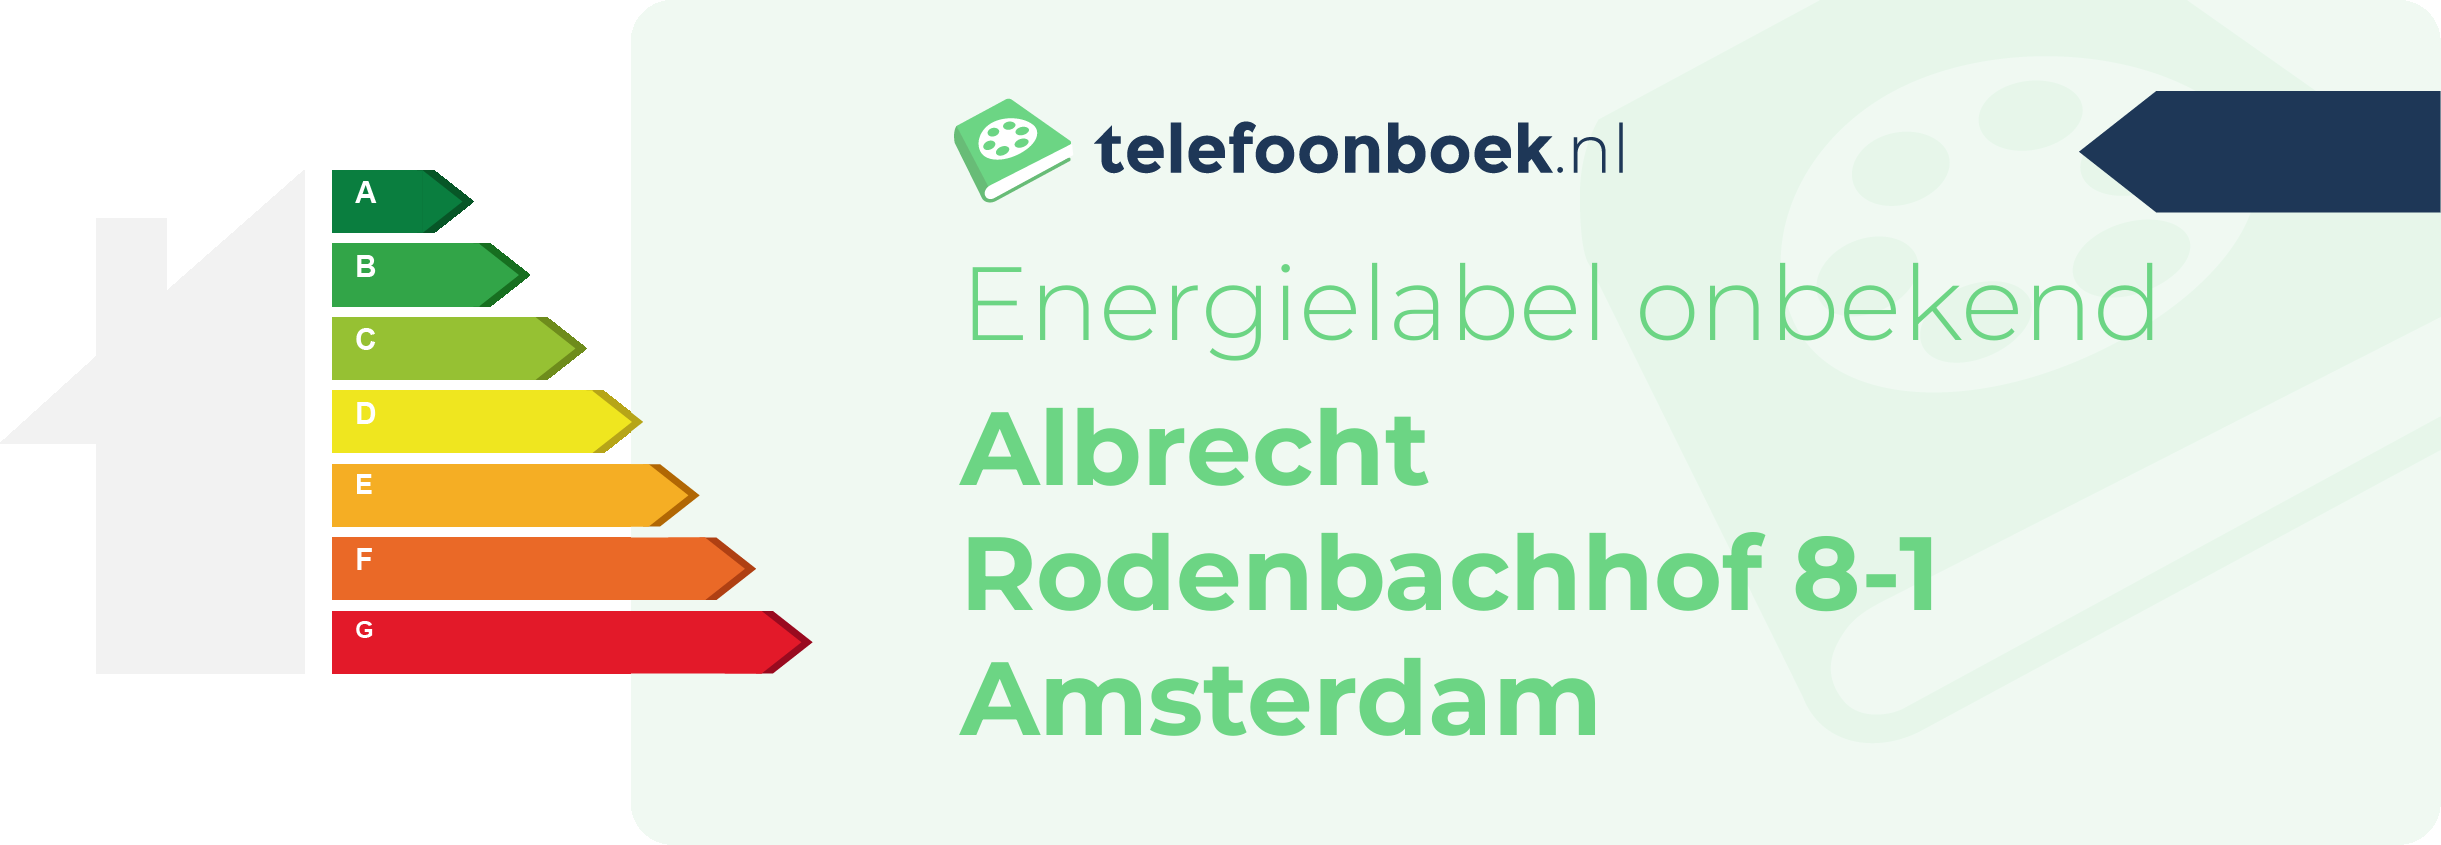 Energielabel Albrecht Rodenbachhof 8-1 Amsterdam